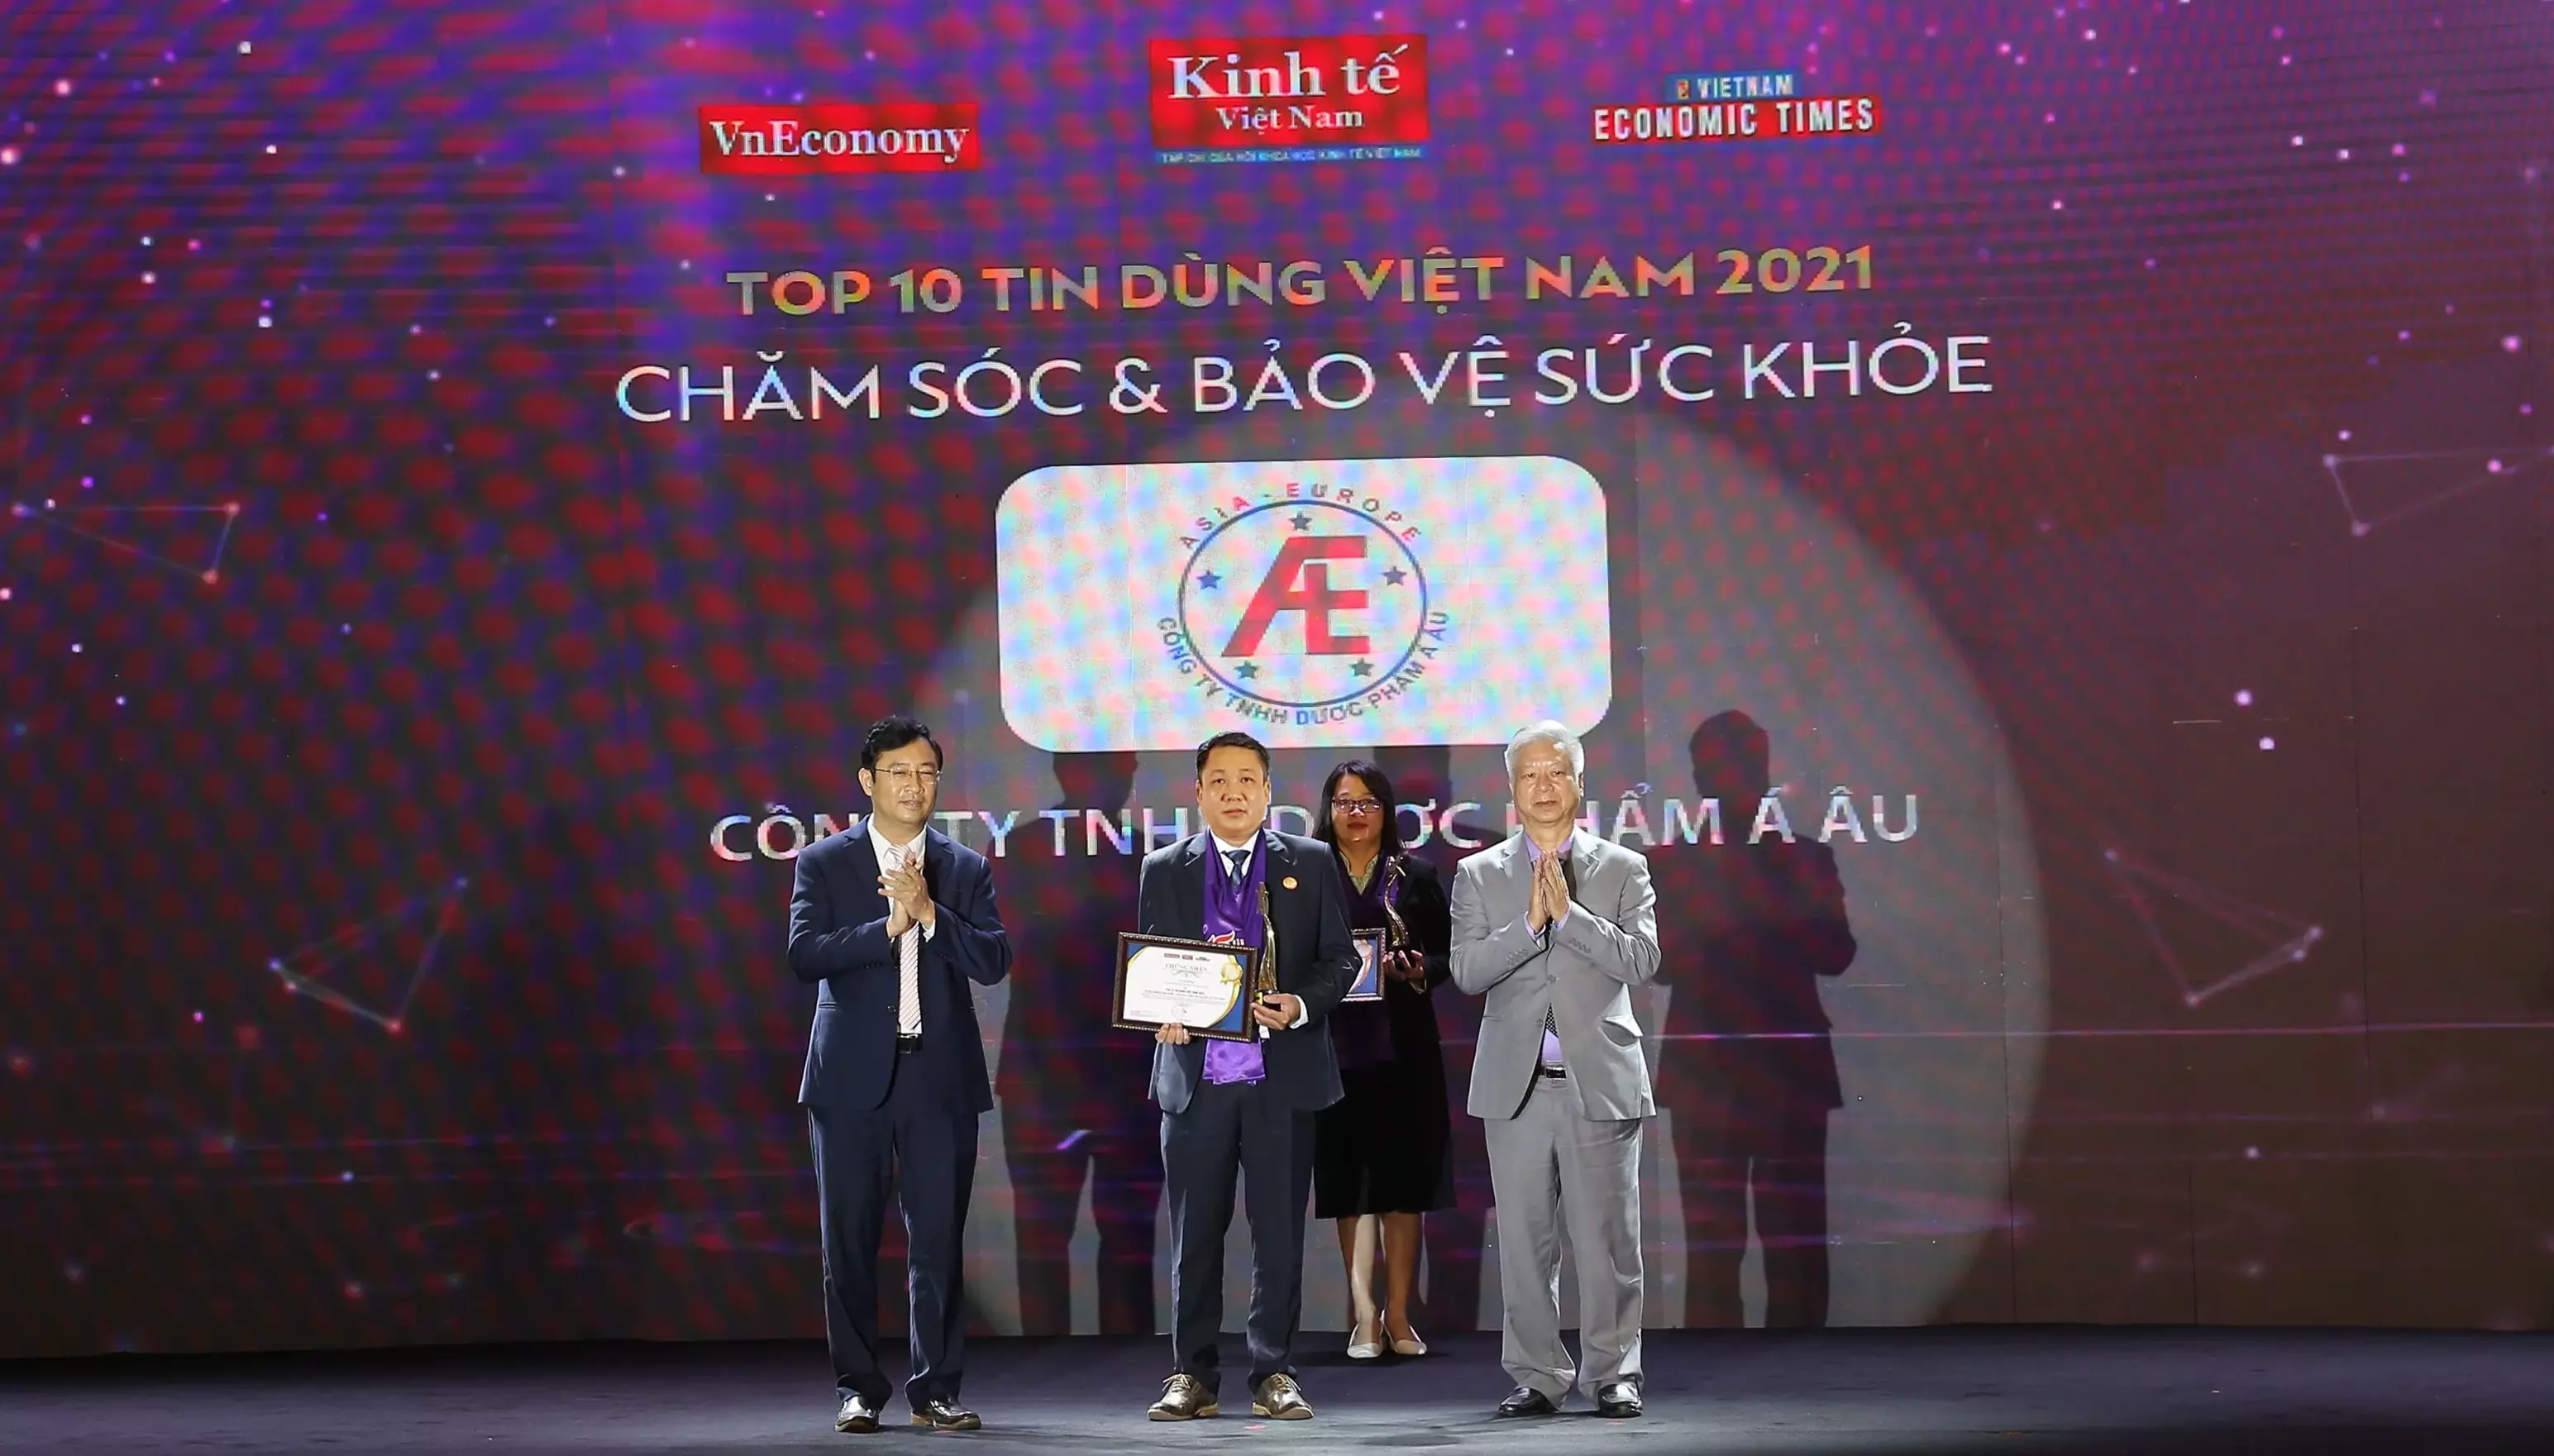 Công ty TNHH Dược phẩm Á Âu tự hào nhận giải thưởng “Top 10 Tin Dùng Việt Nam 2021” cùng 4 sản phẩm vinh dự đạt danh hiệu "Sản phẩm được Tin Dùng số 1 Việt Nam"